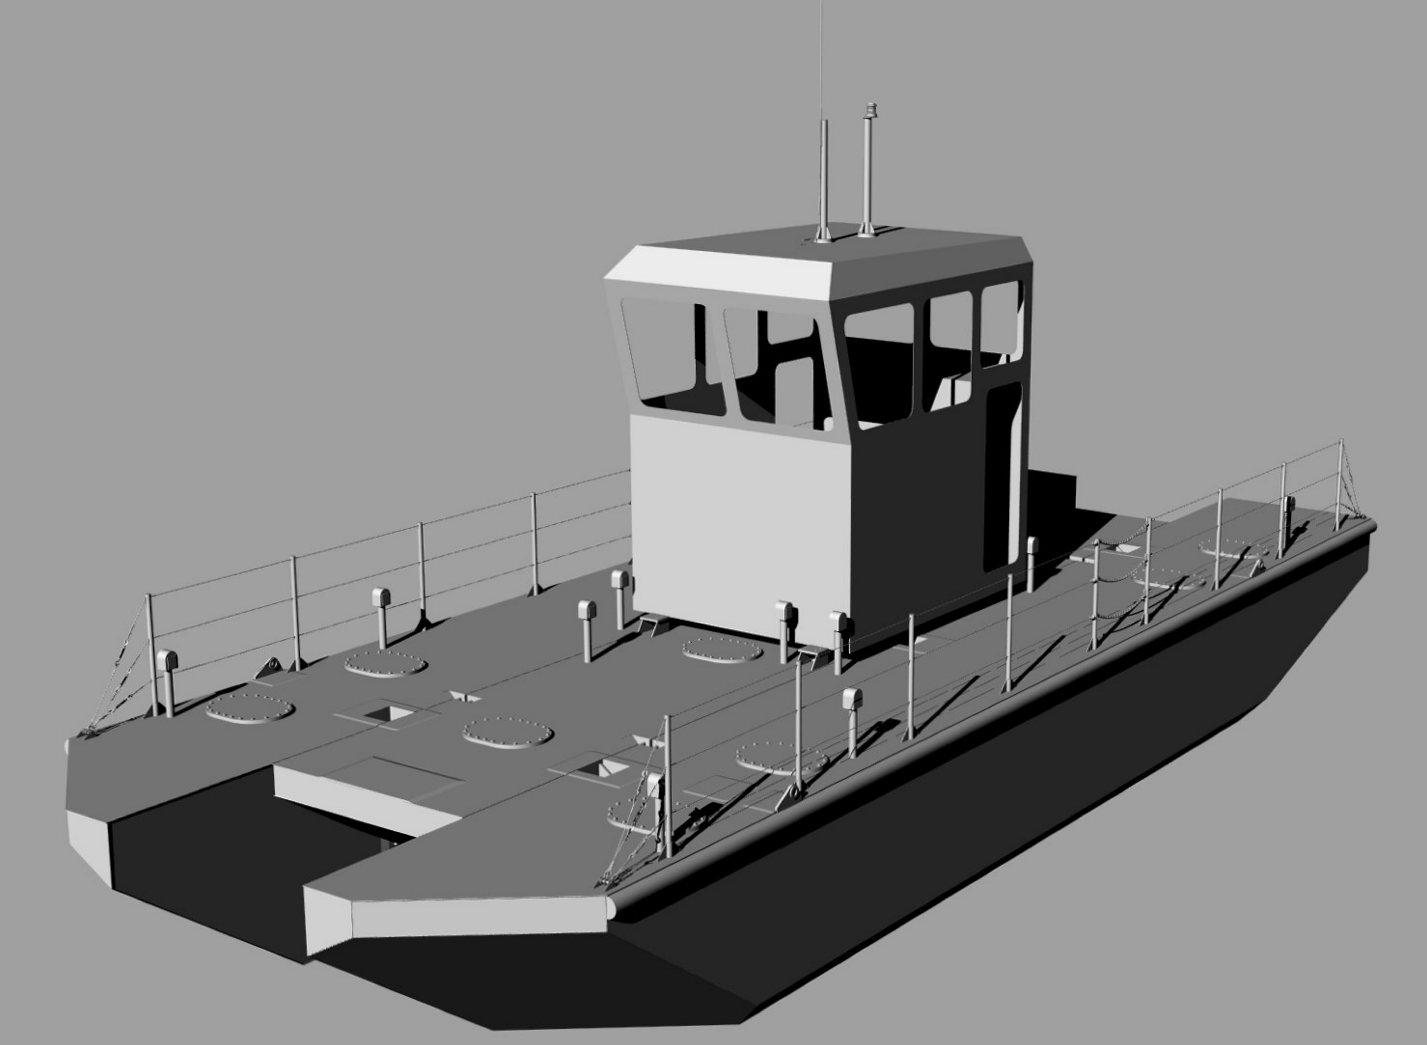 Выполнение работ по проектированию маломерного судна-нефтемусоросборщика катамаранного типа